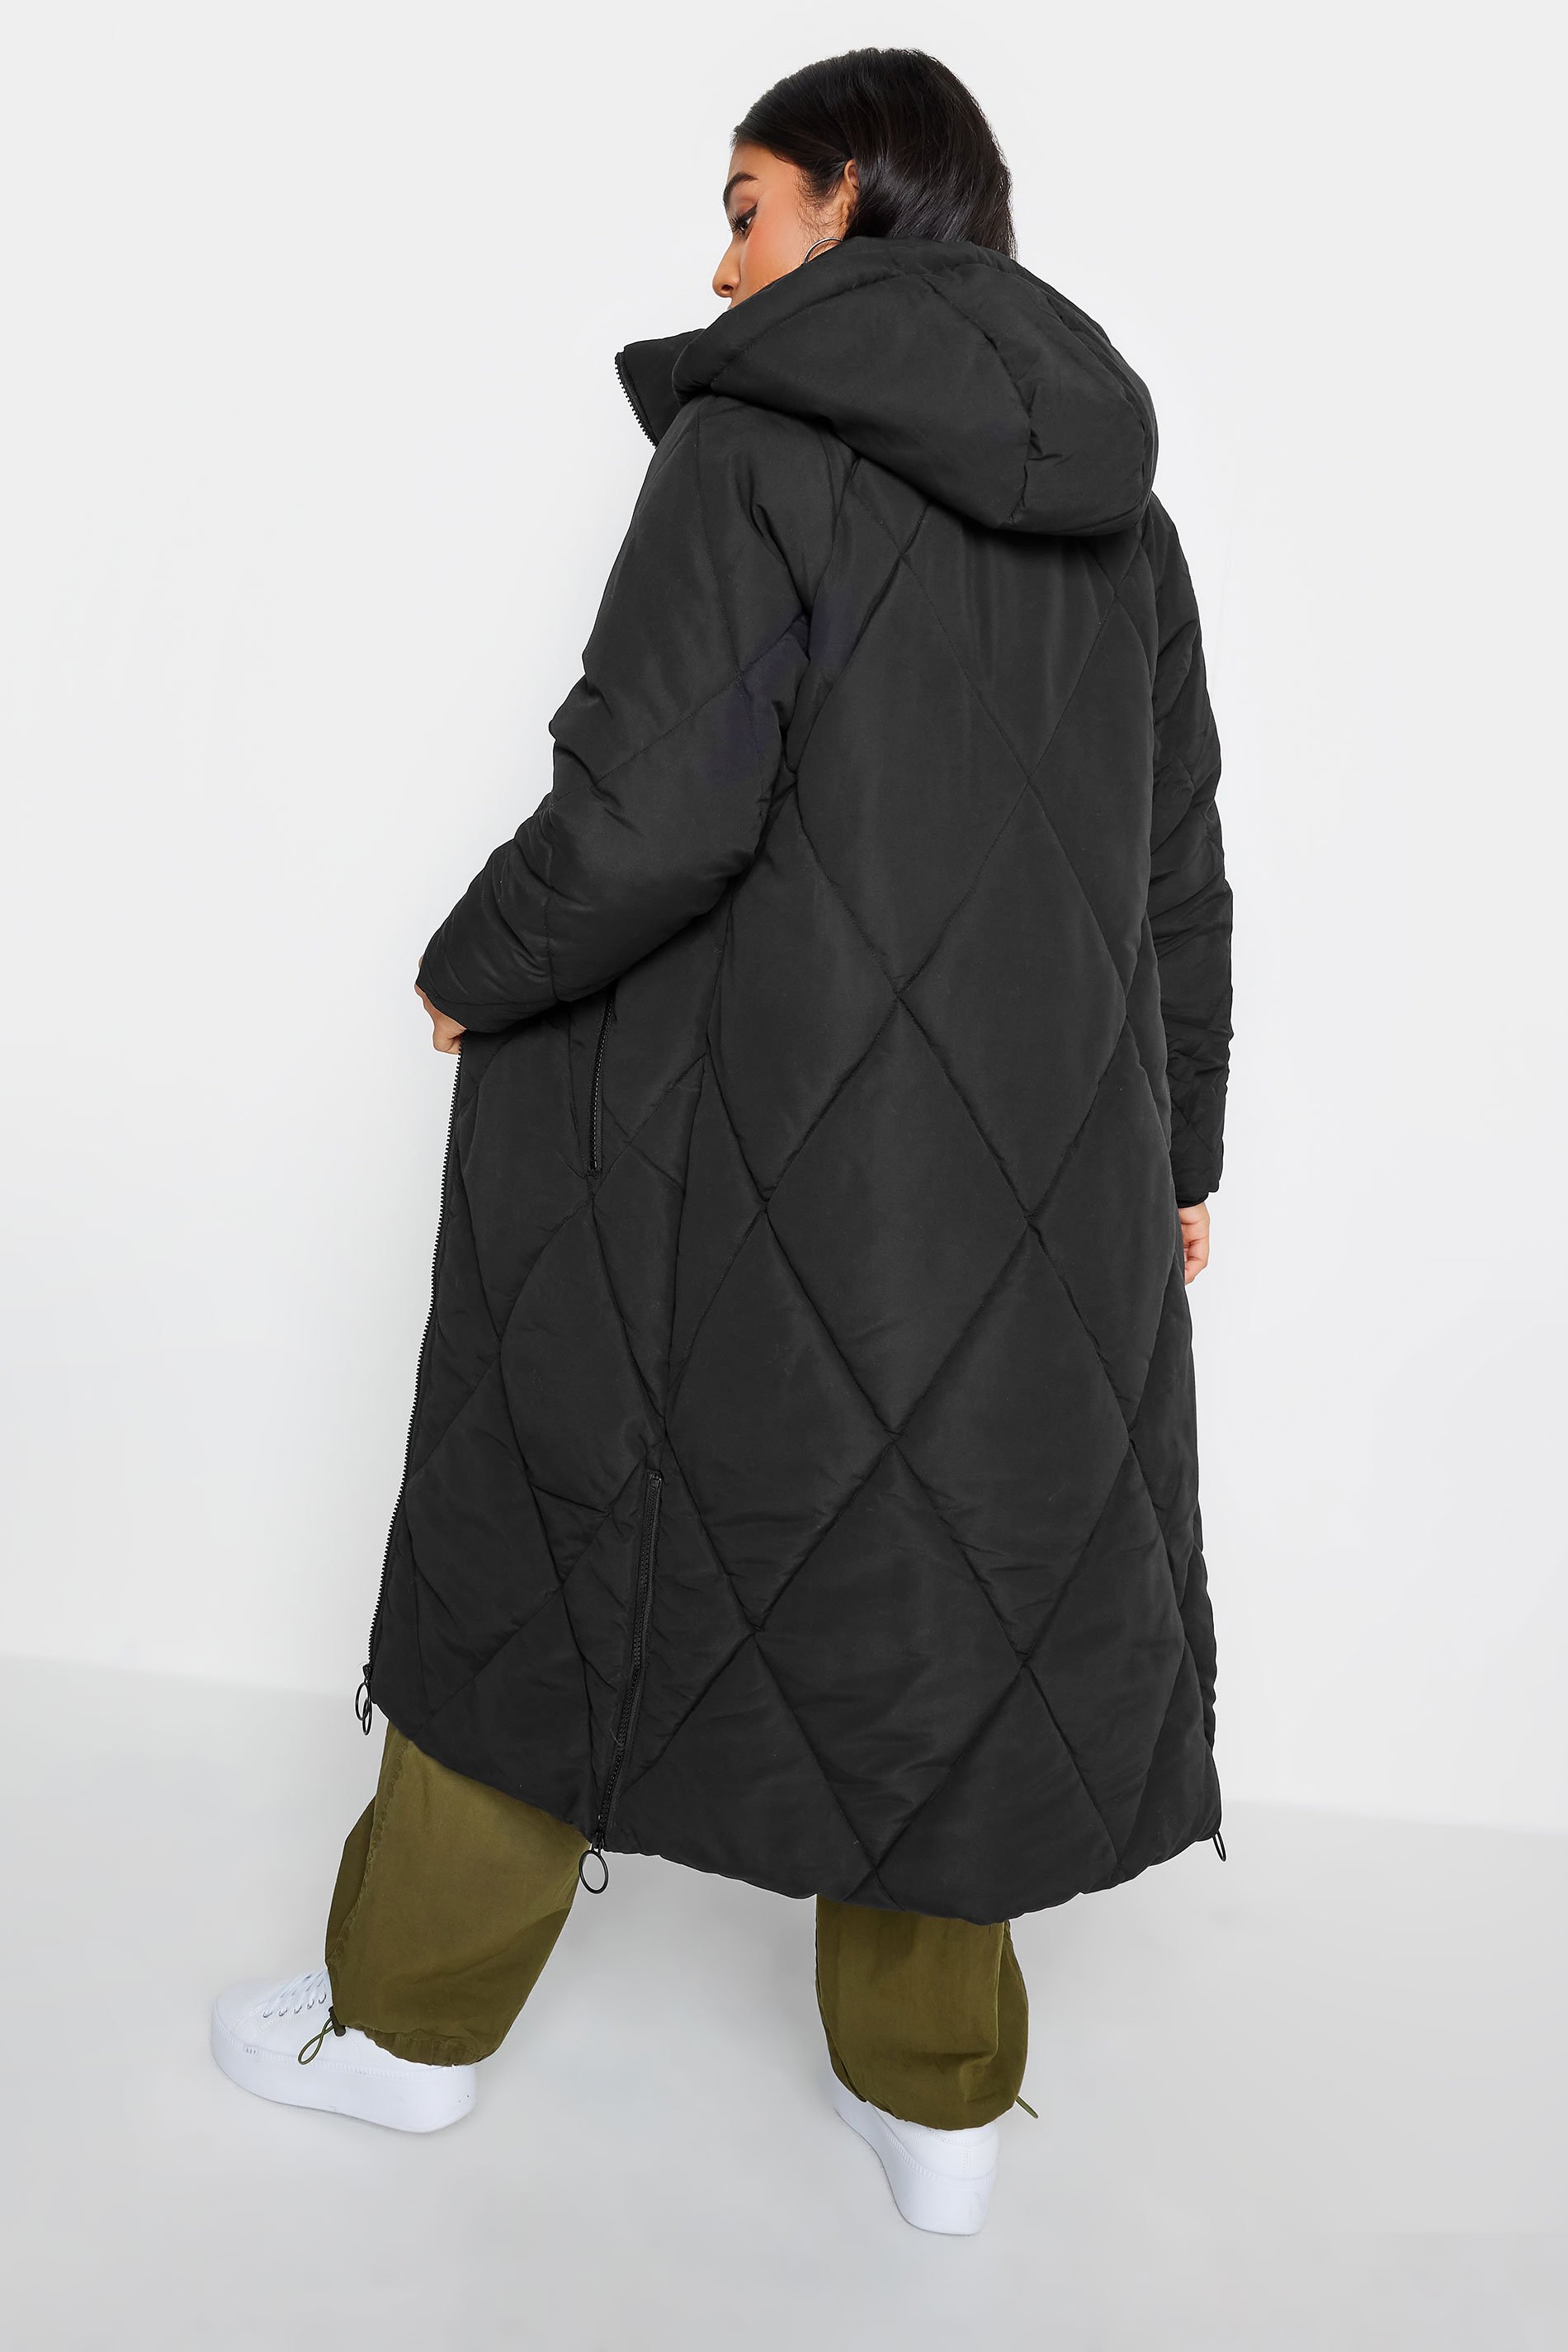 PixieGirl Black Puffer Maxi Coat | PixieGirl